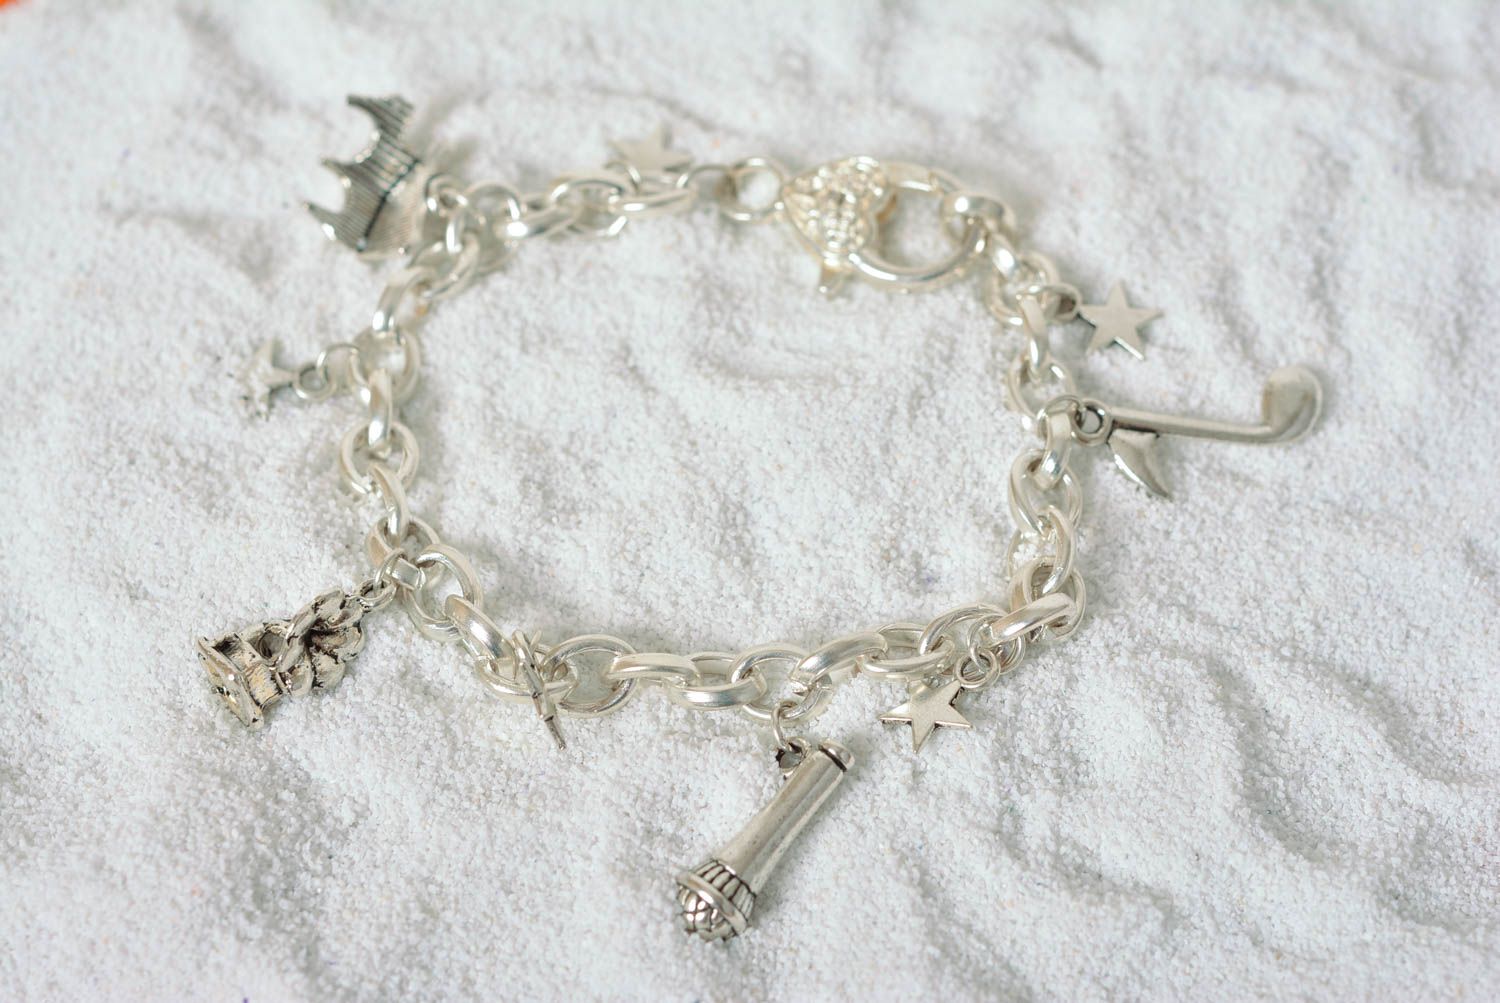 Charm Bracelets vs Charm Necklaces